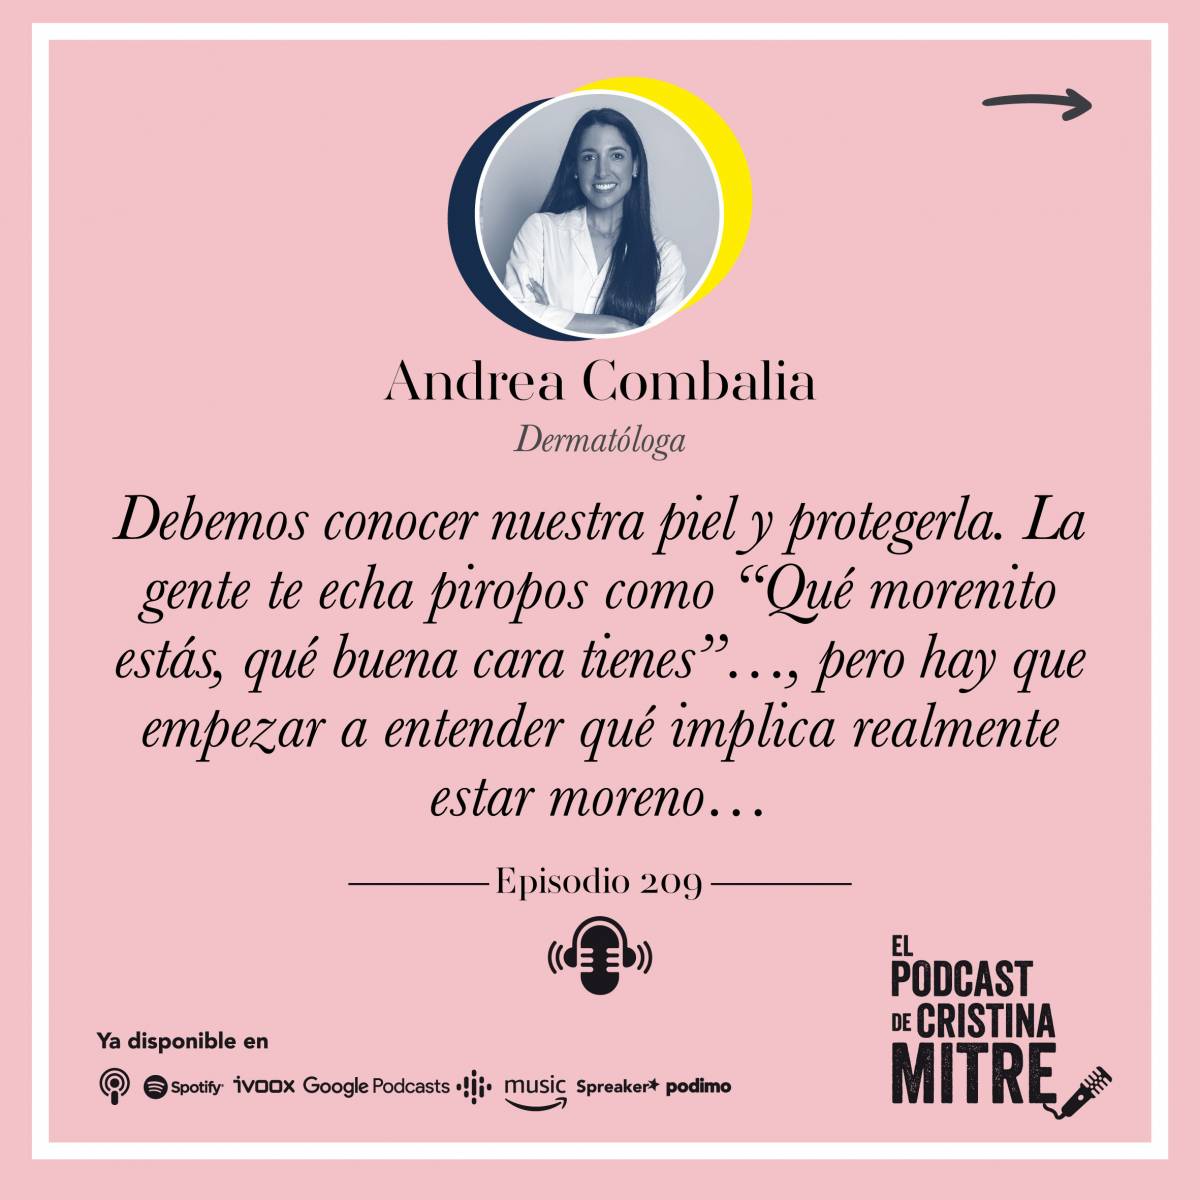 El podcast de Cristina Mitre Andrea Combalia bronceado